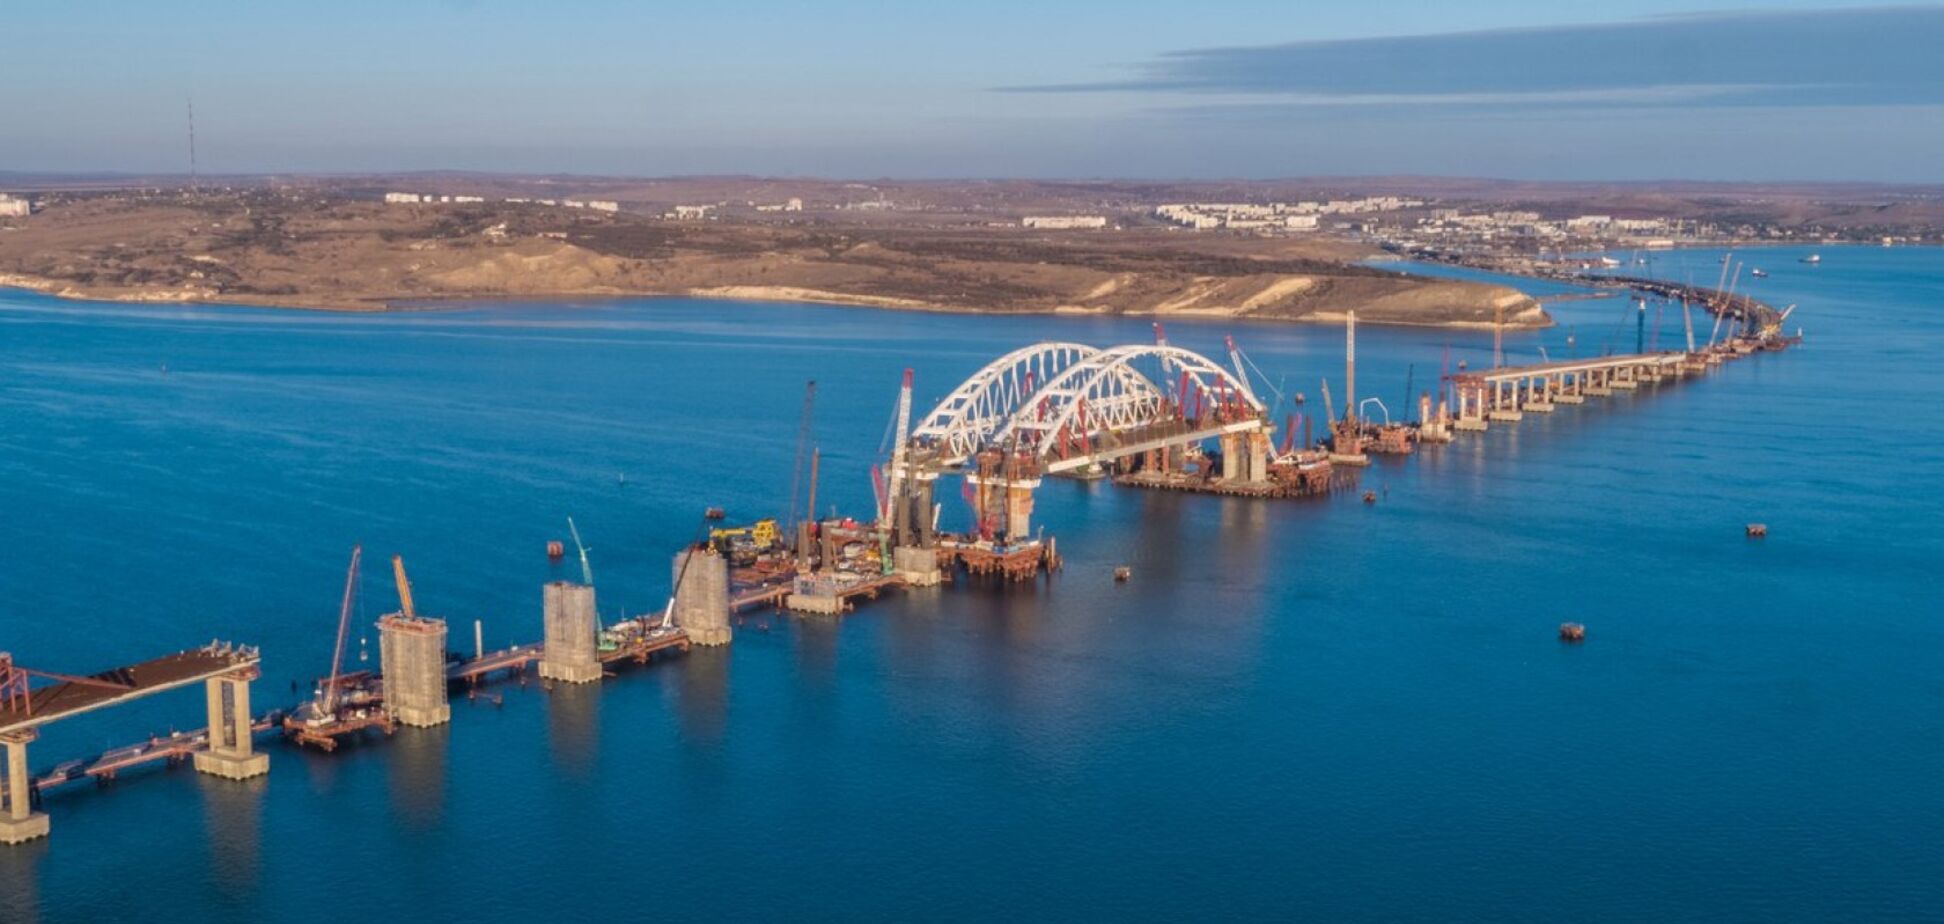 Негайно припинити будівництво Керченського мосту: міністр зробив заяву